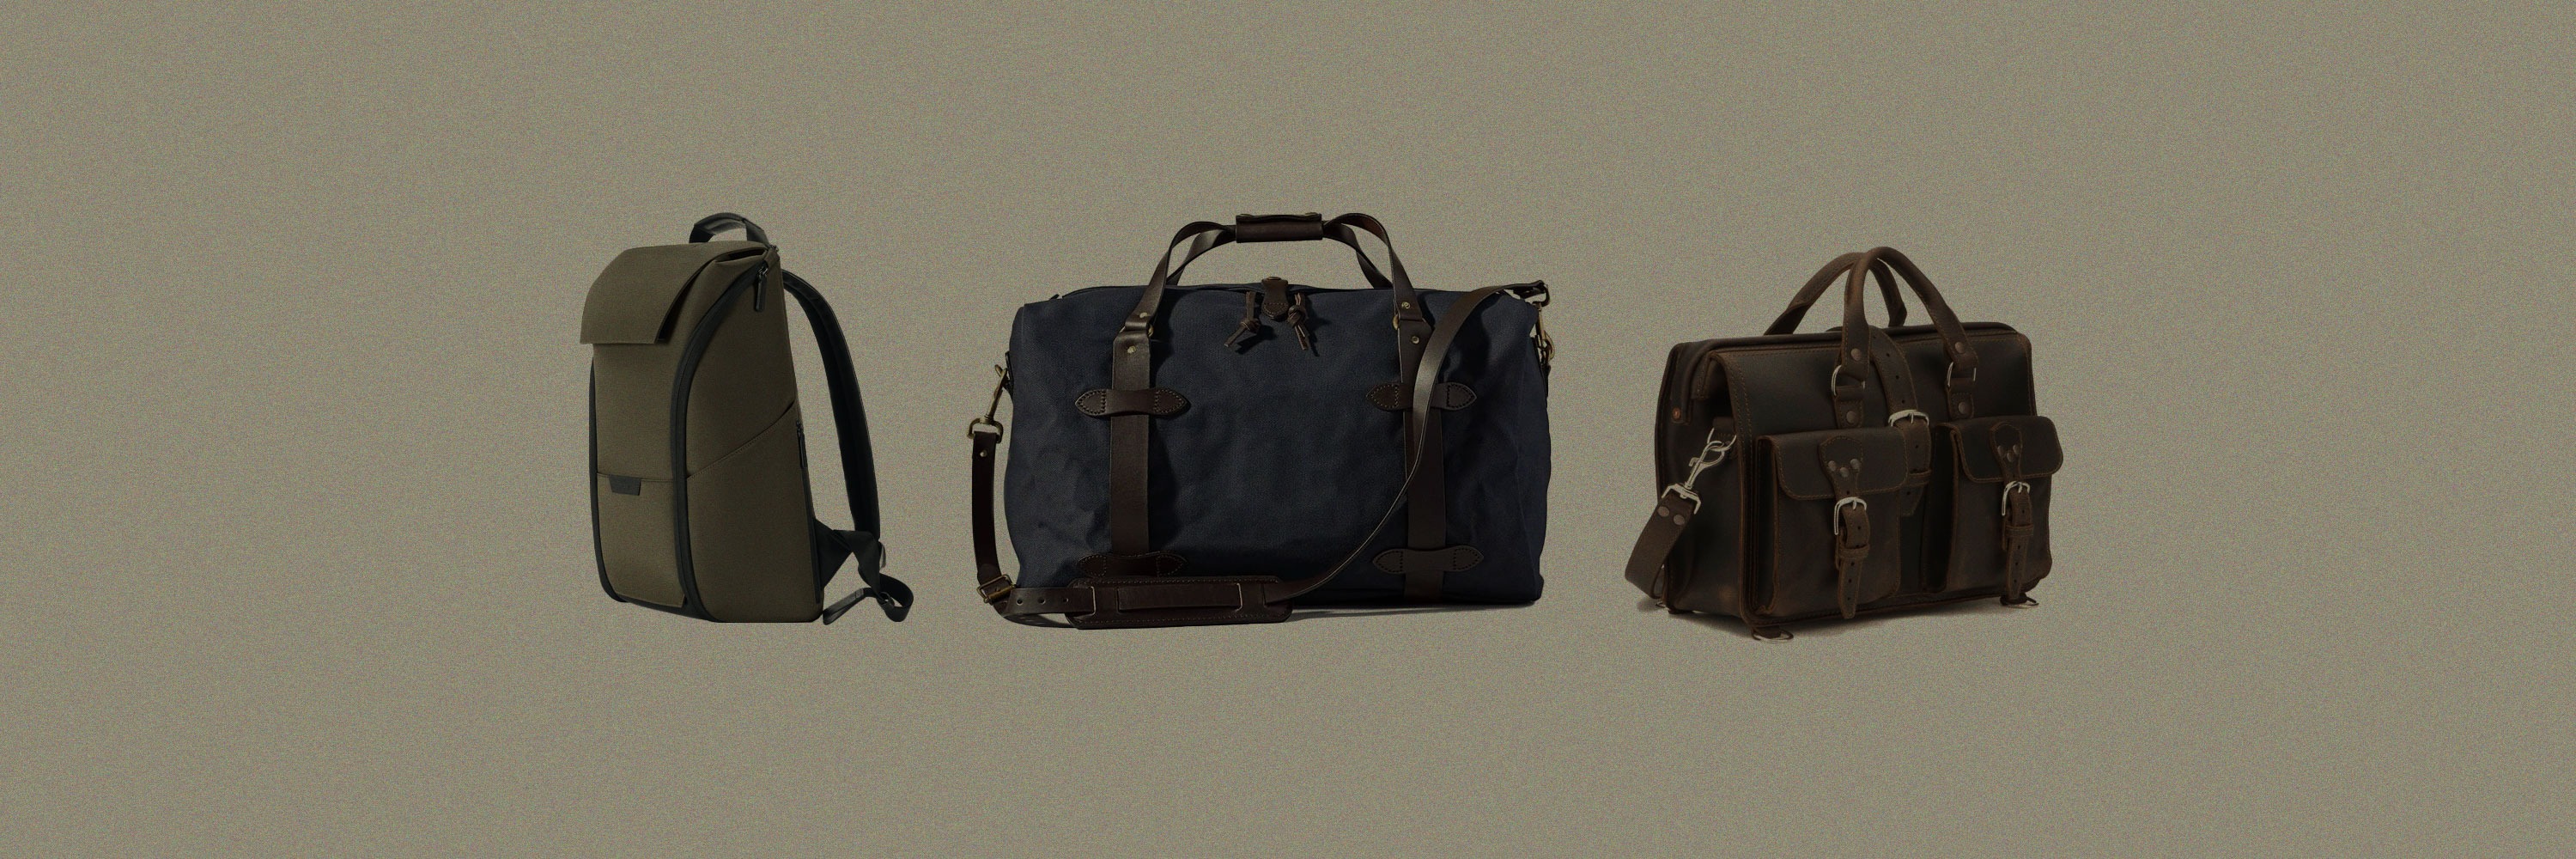 XINHUANG Men Business Briefcase PU Leather Shoulder Bags for 13 Inch Laptop Bag Big Travel Handbag Color : Light Brown 